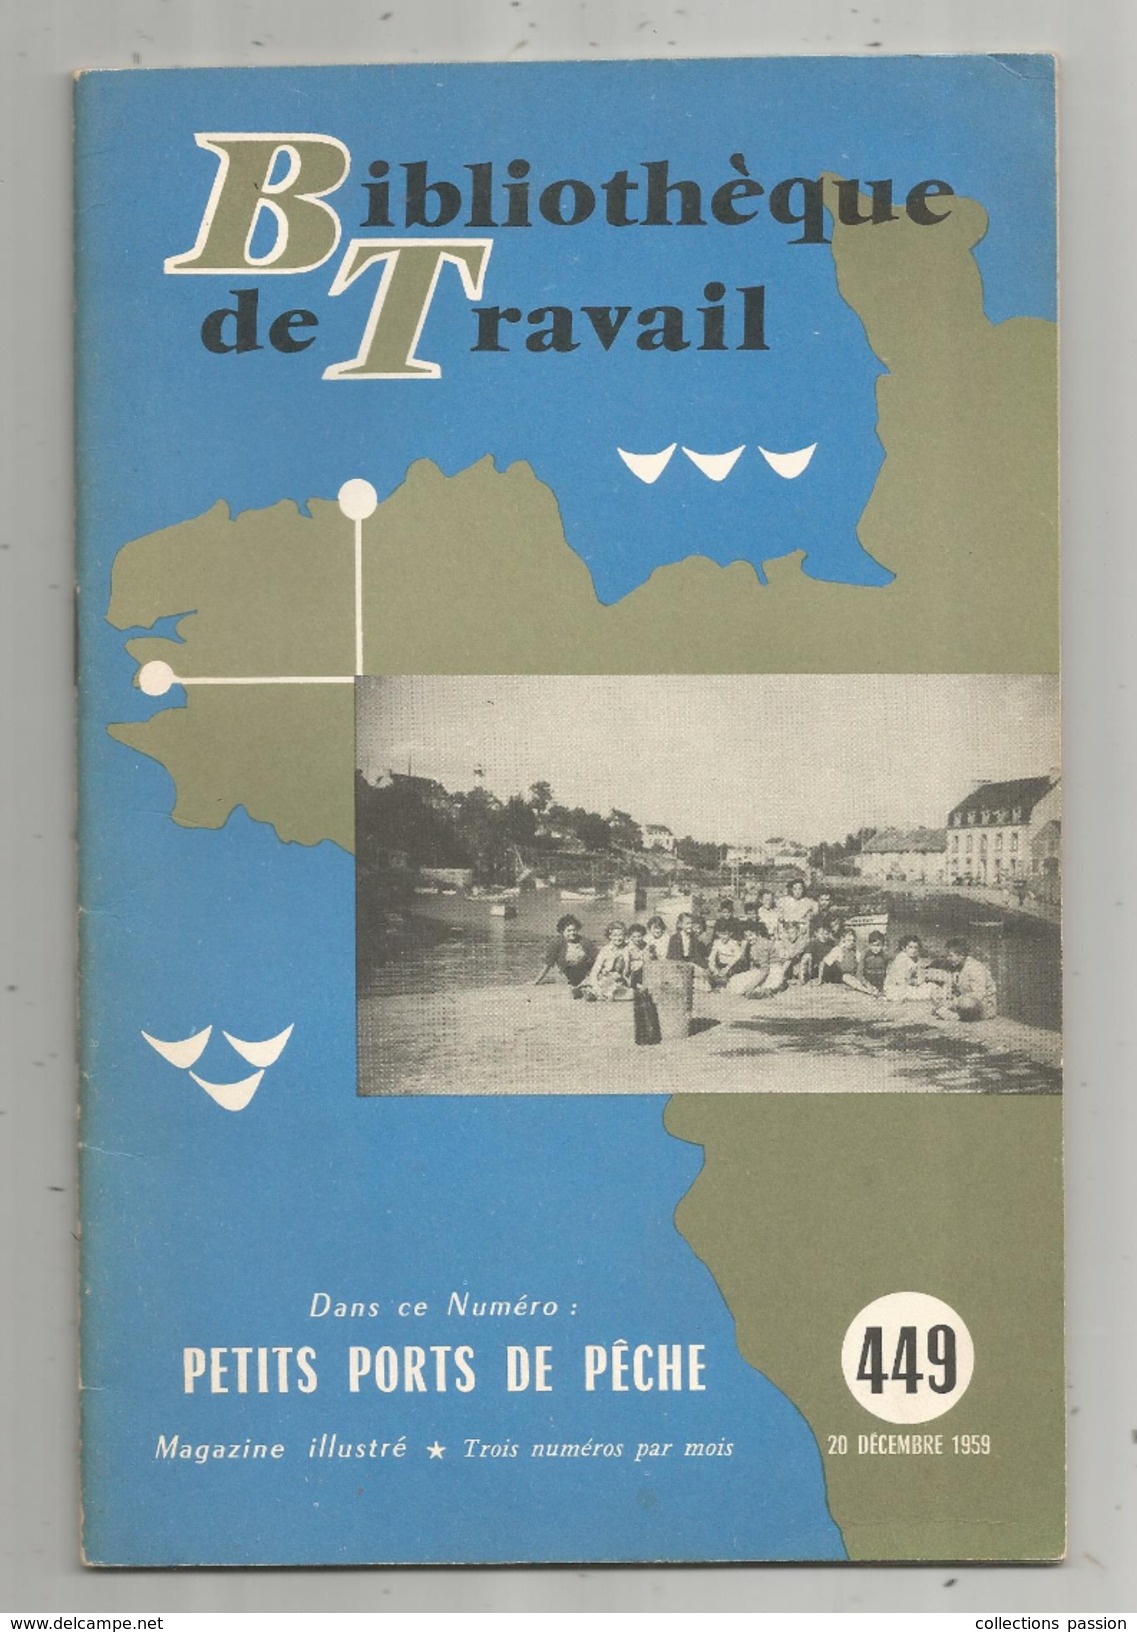 Bibliothéque De Travail, N° 449, 1959, Petits PORTS De PÊCHE, 28 Pages, Photos, Plans, Illustratration, Frais Fr : 2.45& - Caza/Pezca